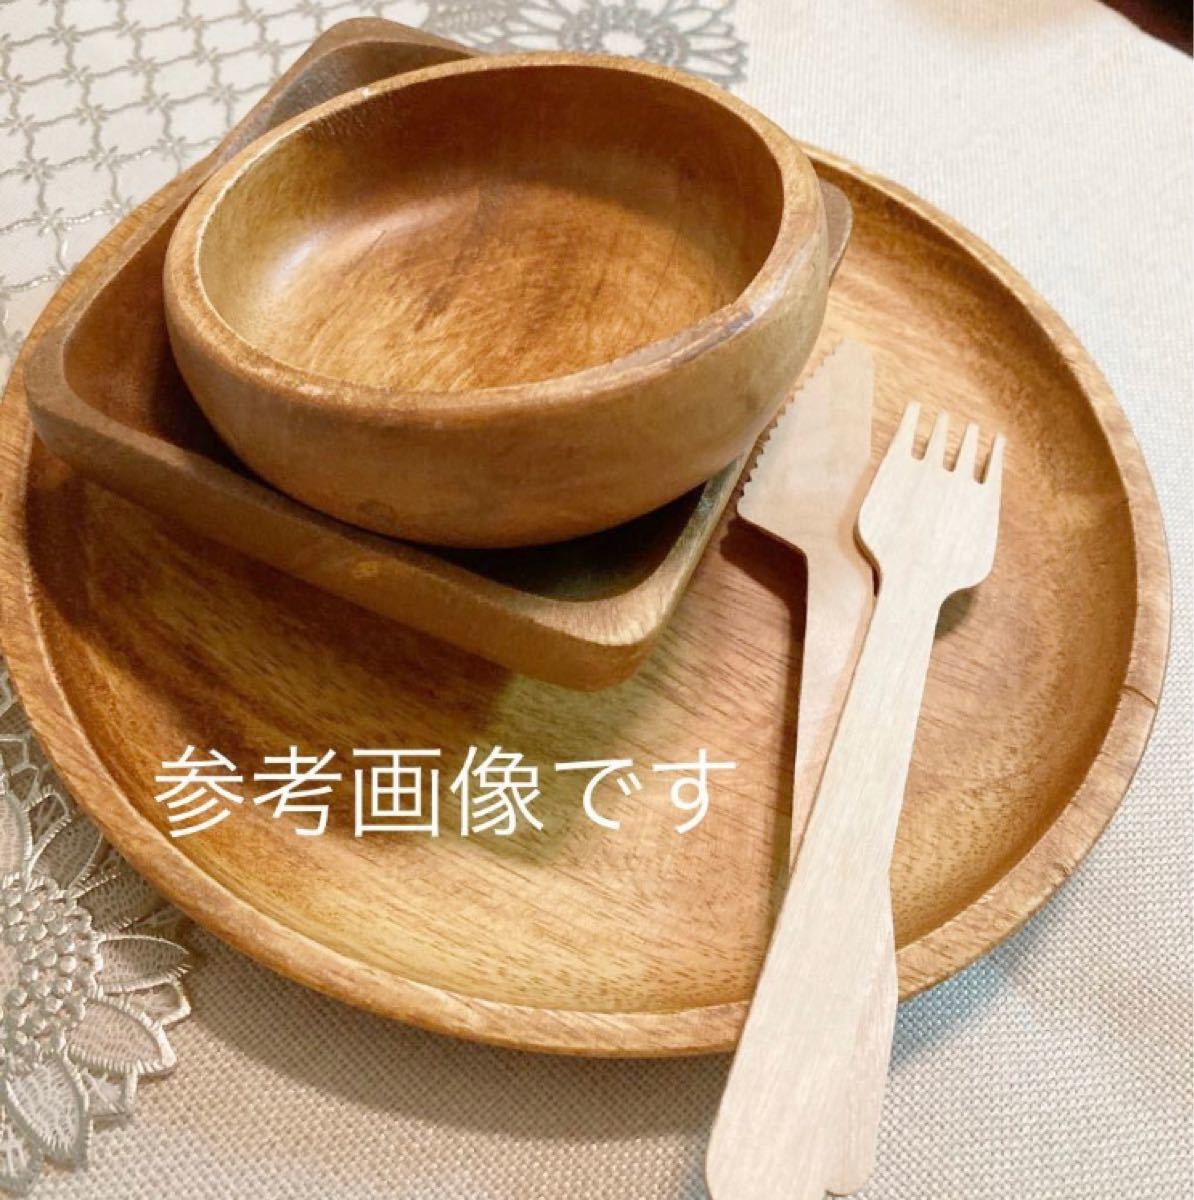 アカシア ラウンドプレート5枚セット 新品 ワンプレート カレー皿 木製トレー 木のお皿 木製食器 丸皿